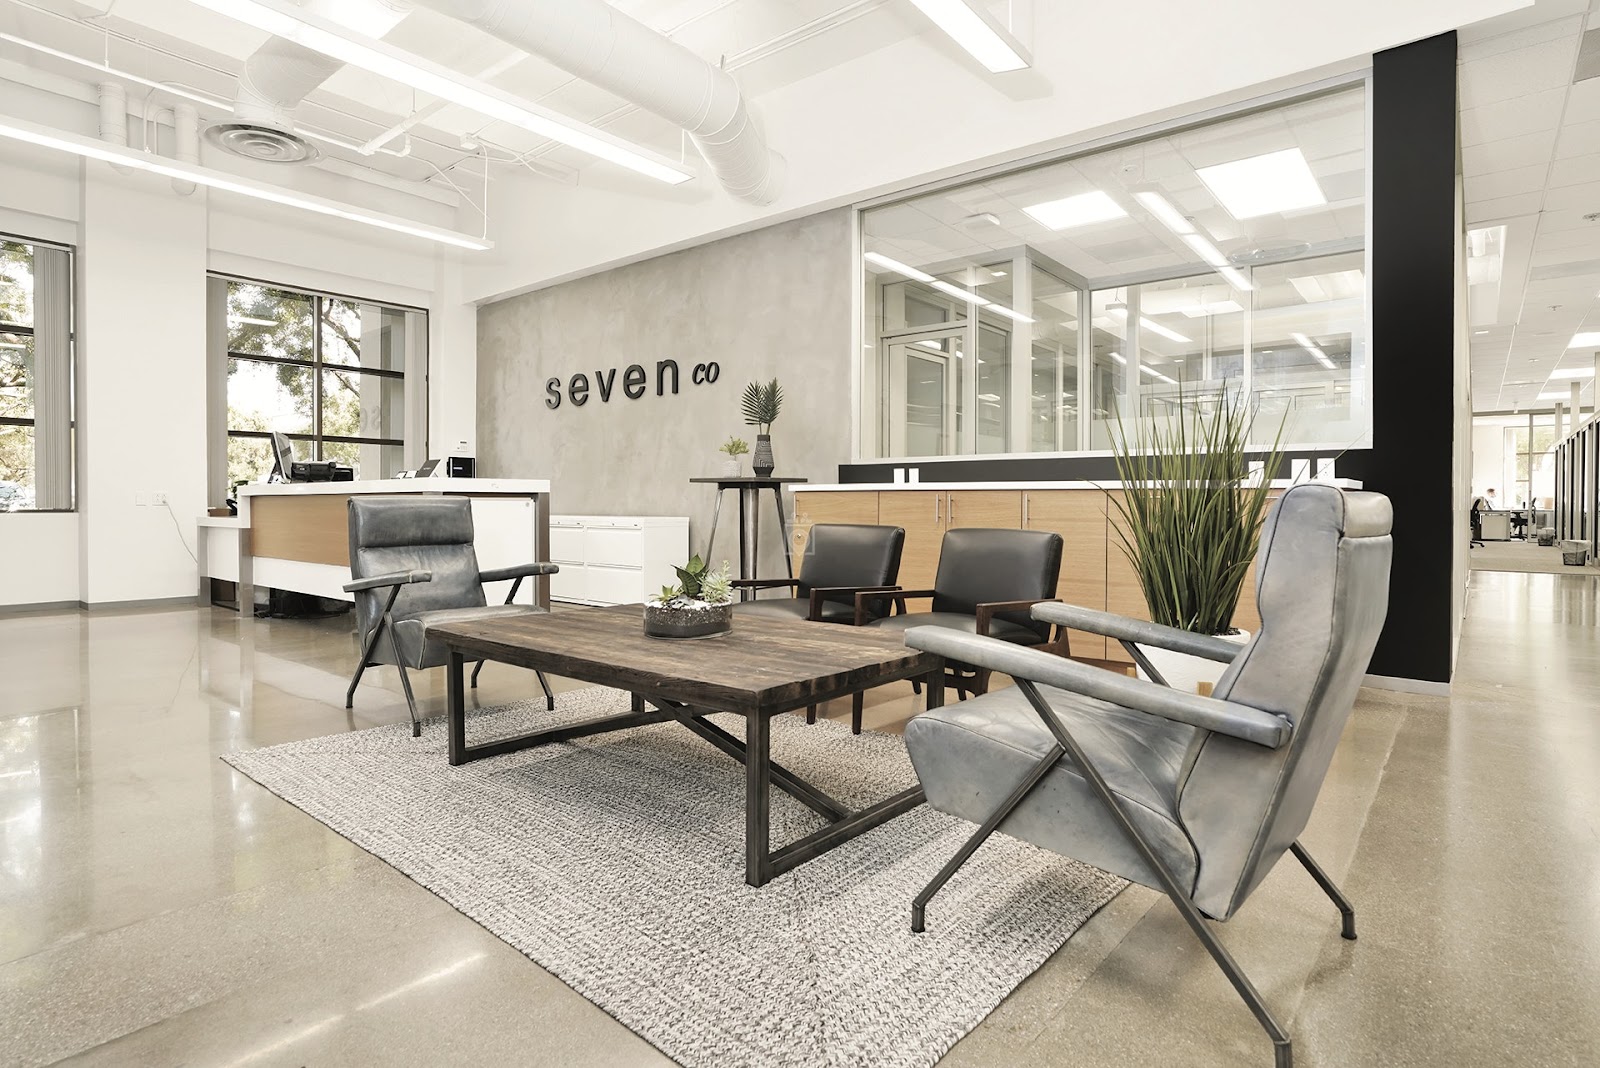 Sevenco Coworking Space in Orange County California